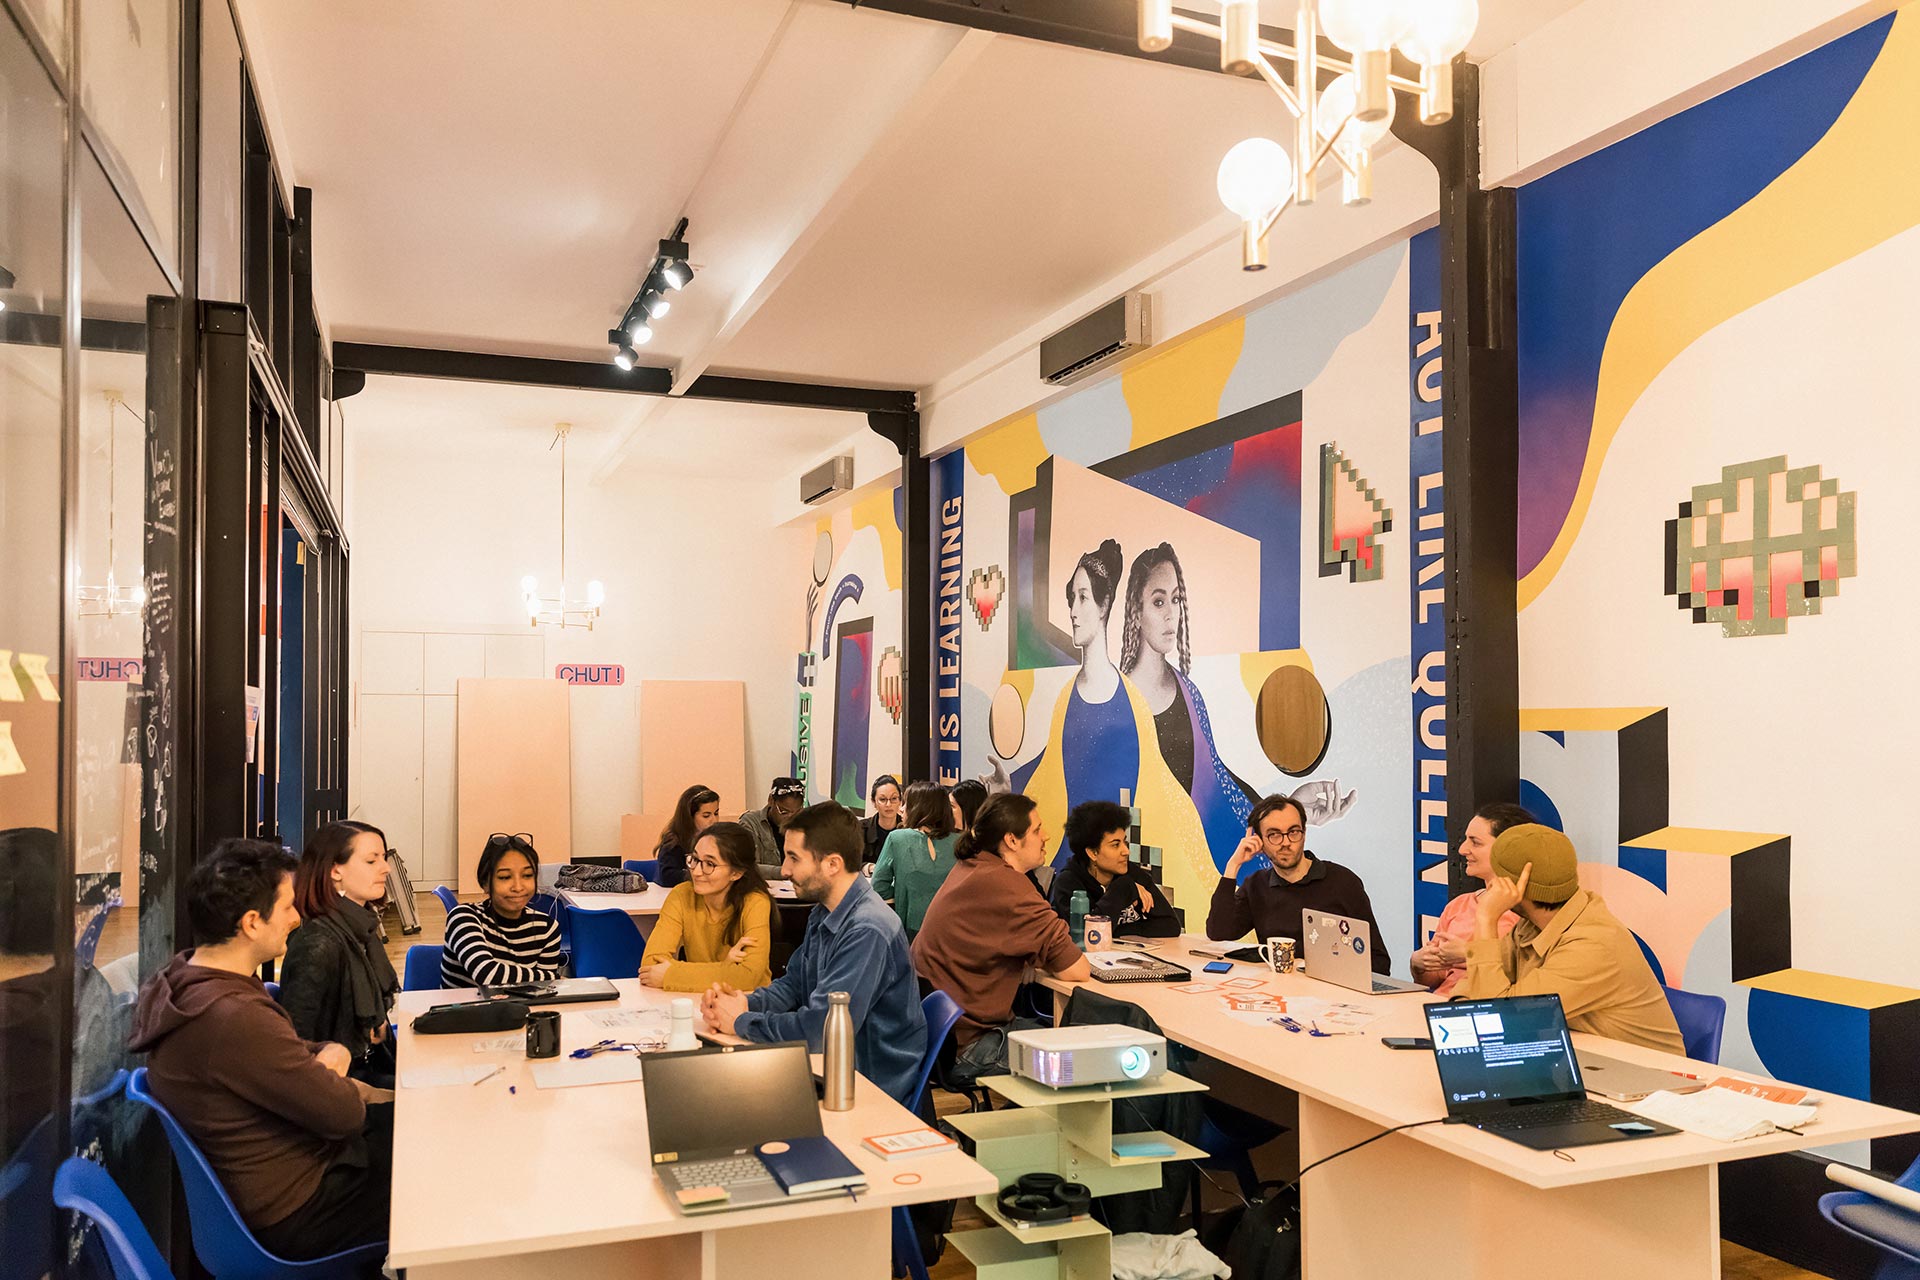 Voir l'actualité  Ada Tech School, école d’informatique inclusive et féministe, ouvre un campus à Lyon